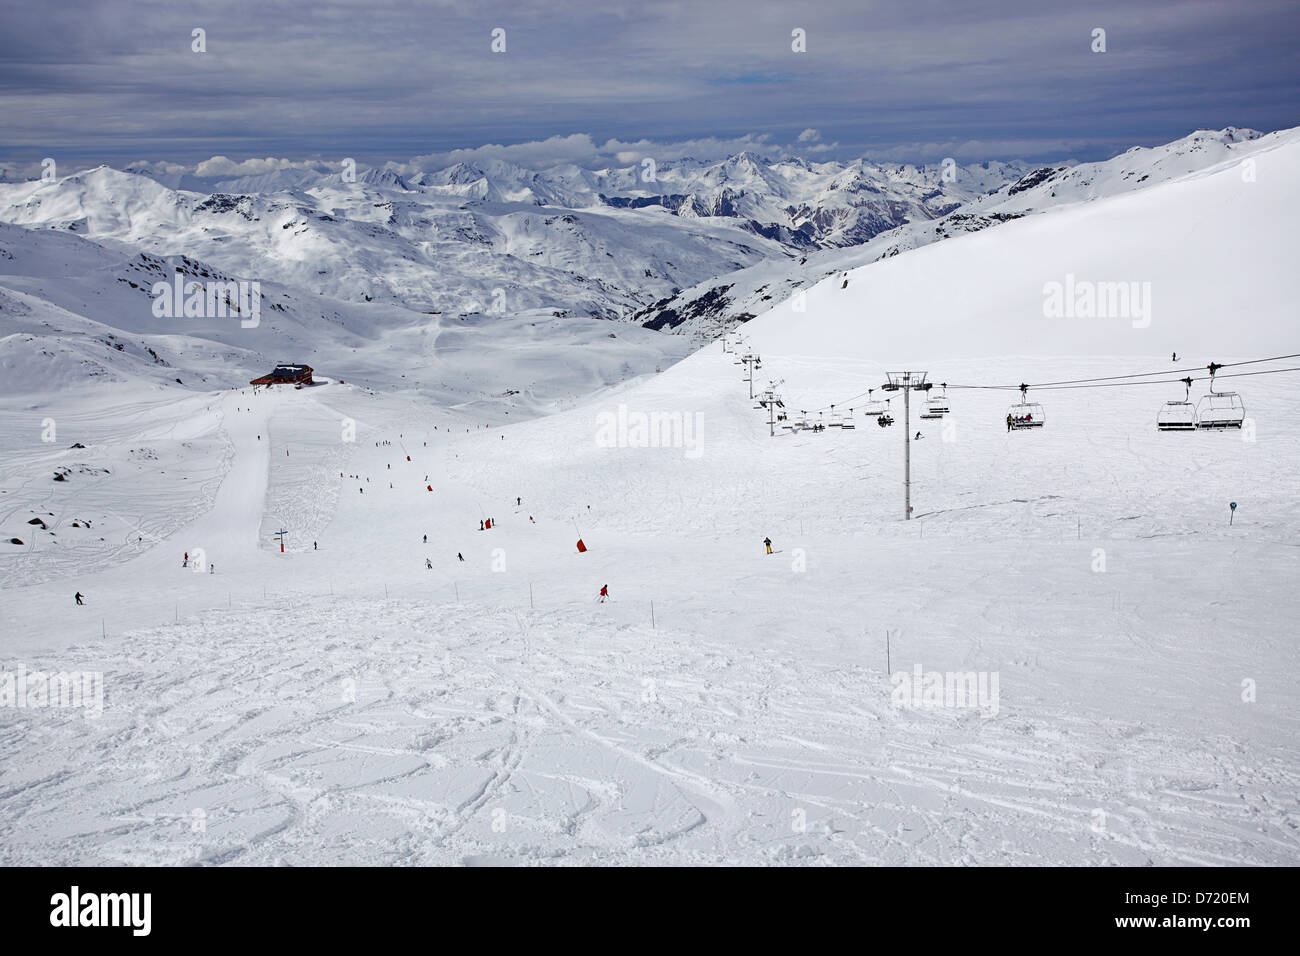 Typische Reise Art Foto aus einem Skiurlaub in den französischen Alpen Stockfoto